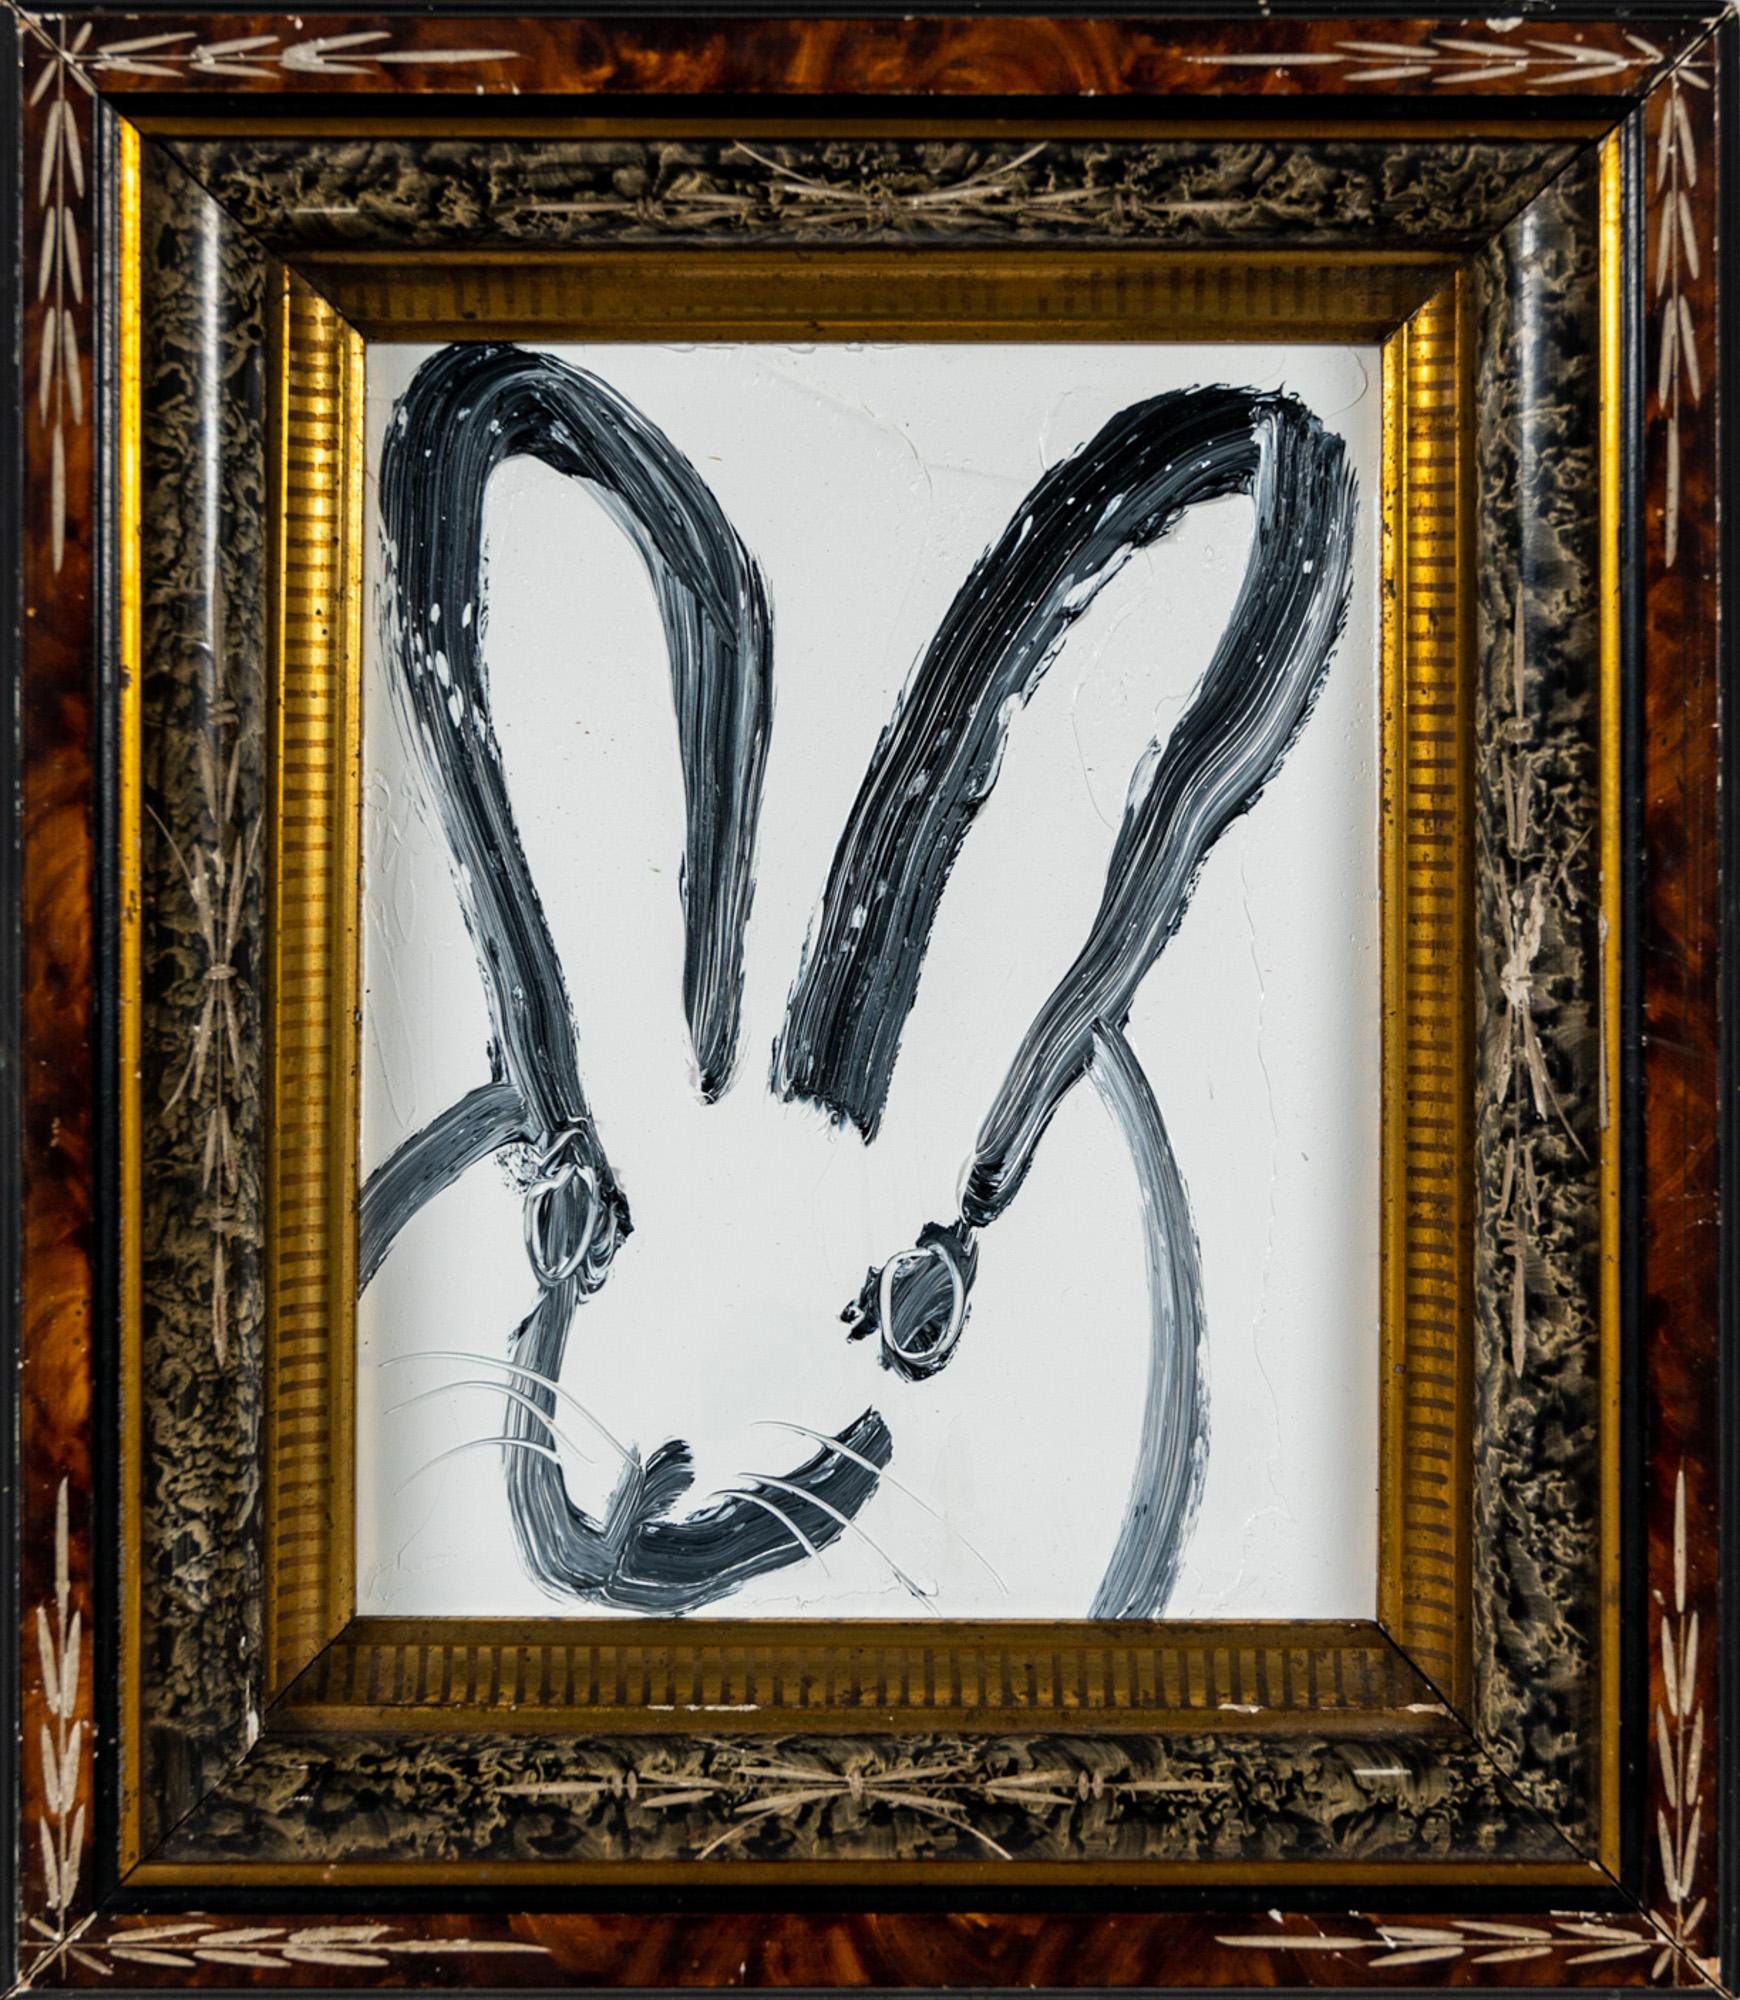 "Leroy" ist ein gerahmtes Ölgemälde auf Holz von Hunt Slonem, das ein einsames Kaninchen in malerischen Konturlinien vor einem einfachen weißen Hintergrund zeigt. 

Dieses Werk ist in einem antiken Rahmen gefasst, der vom Künstler für dieses Gemälde